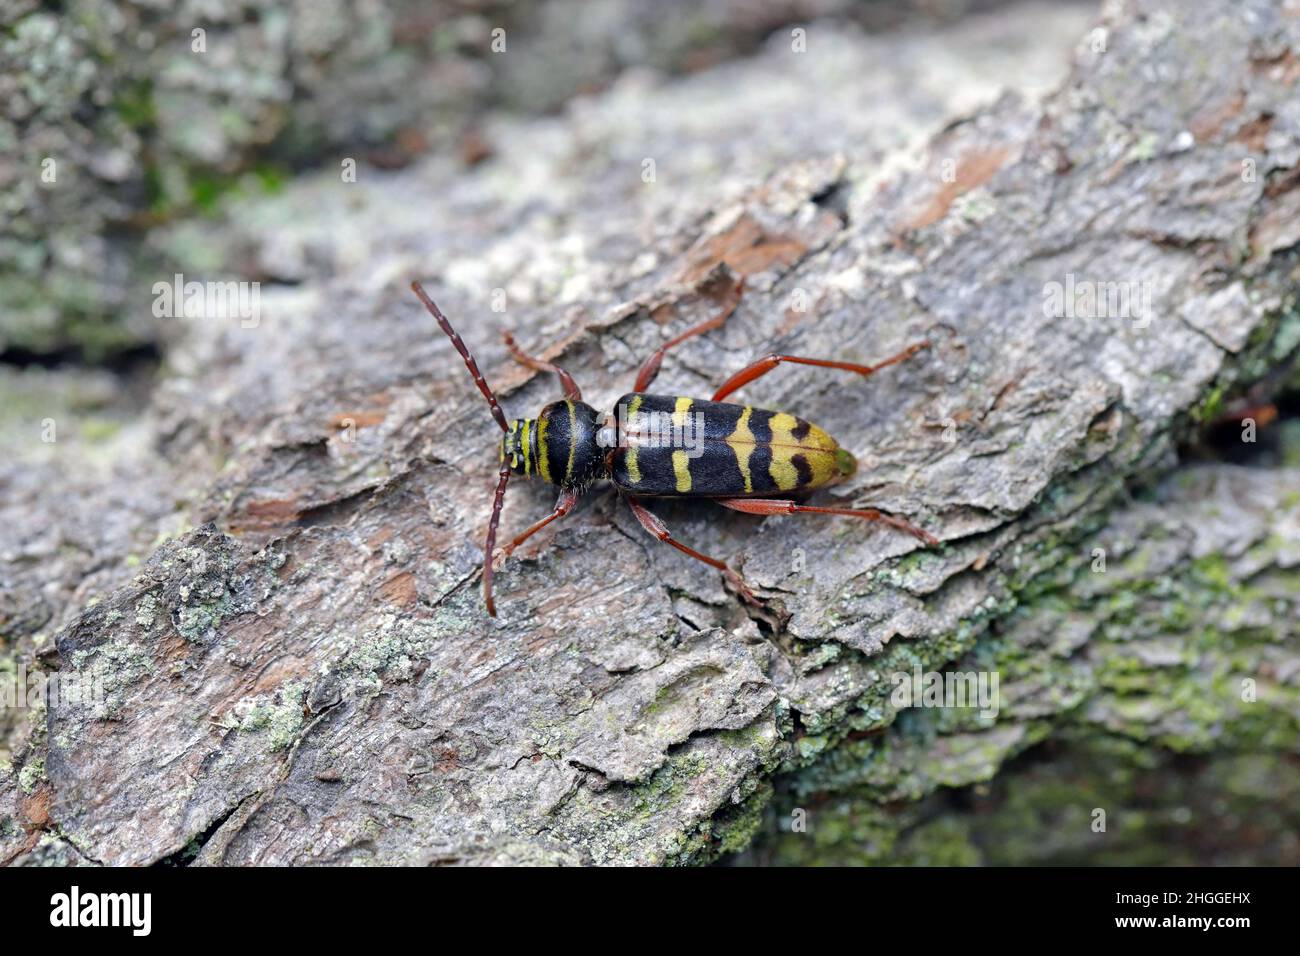 Macro photo of a long horn beetle - Plagionotus detritus. Beetle on oak bark. Stock Photo